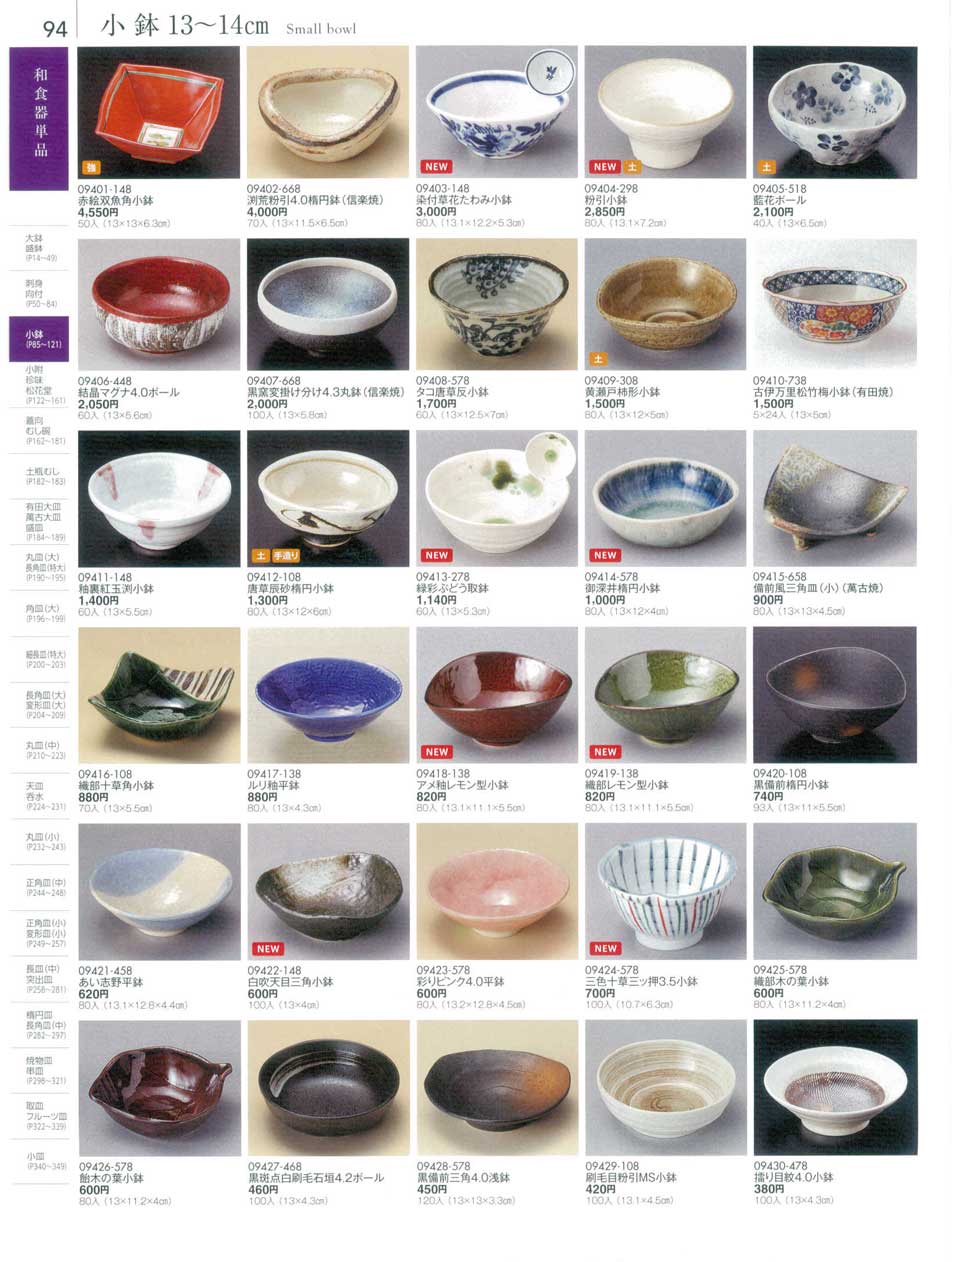 食器 小鉢１３から１４ｃｍSmall bowl 陶雅１８－94ページ